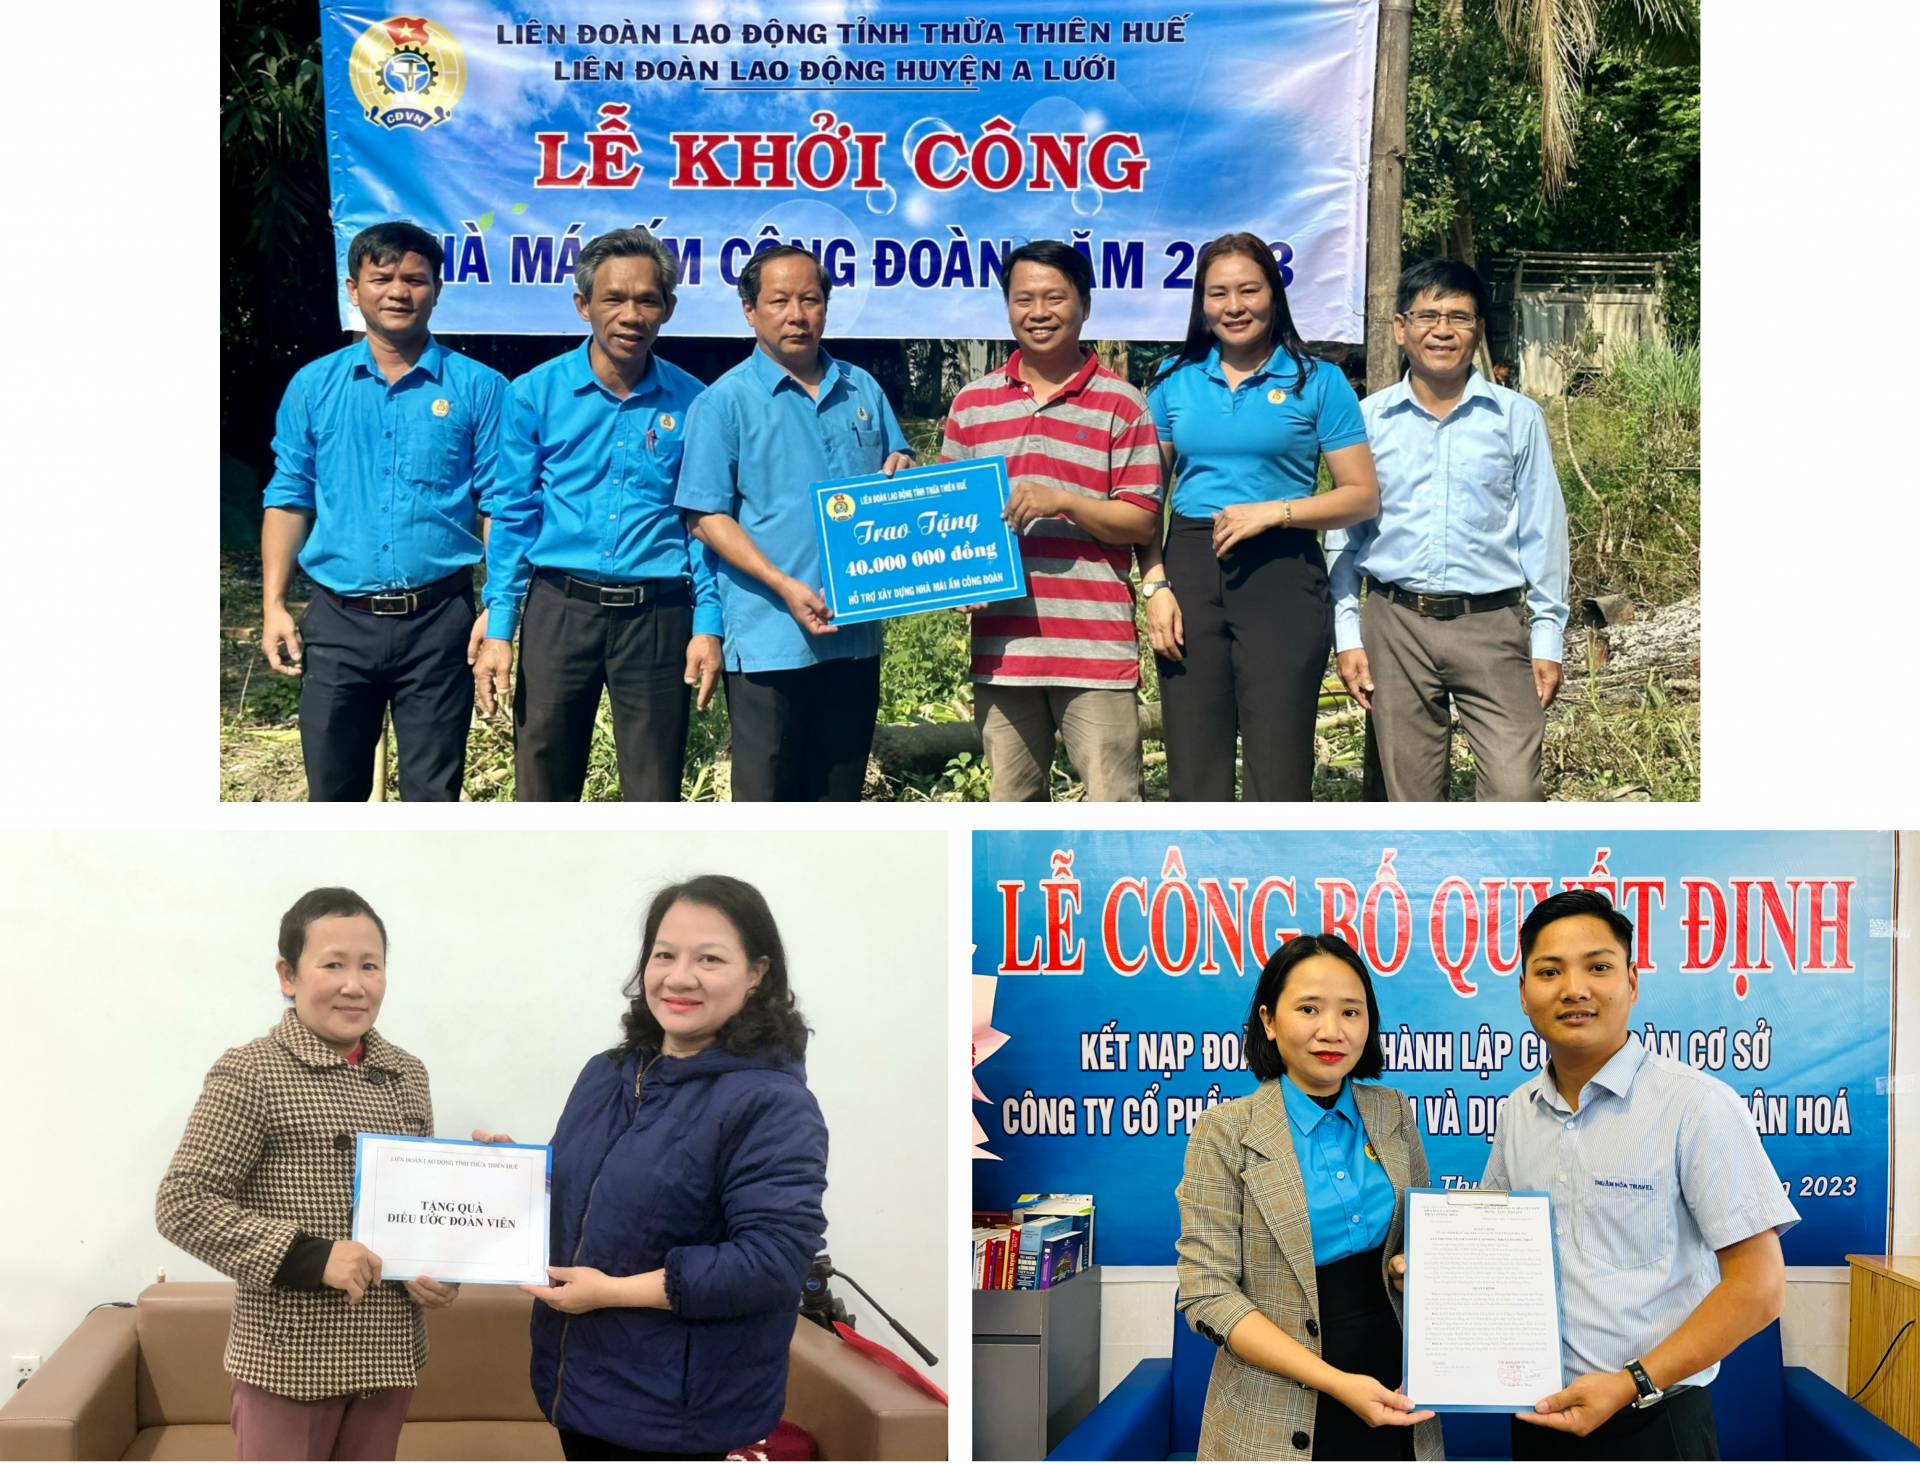 Đại hội Công đoàn tỉnh Thừa Thiên Huế: Đánh dấu bước phát triển mới